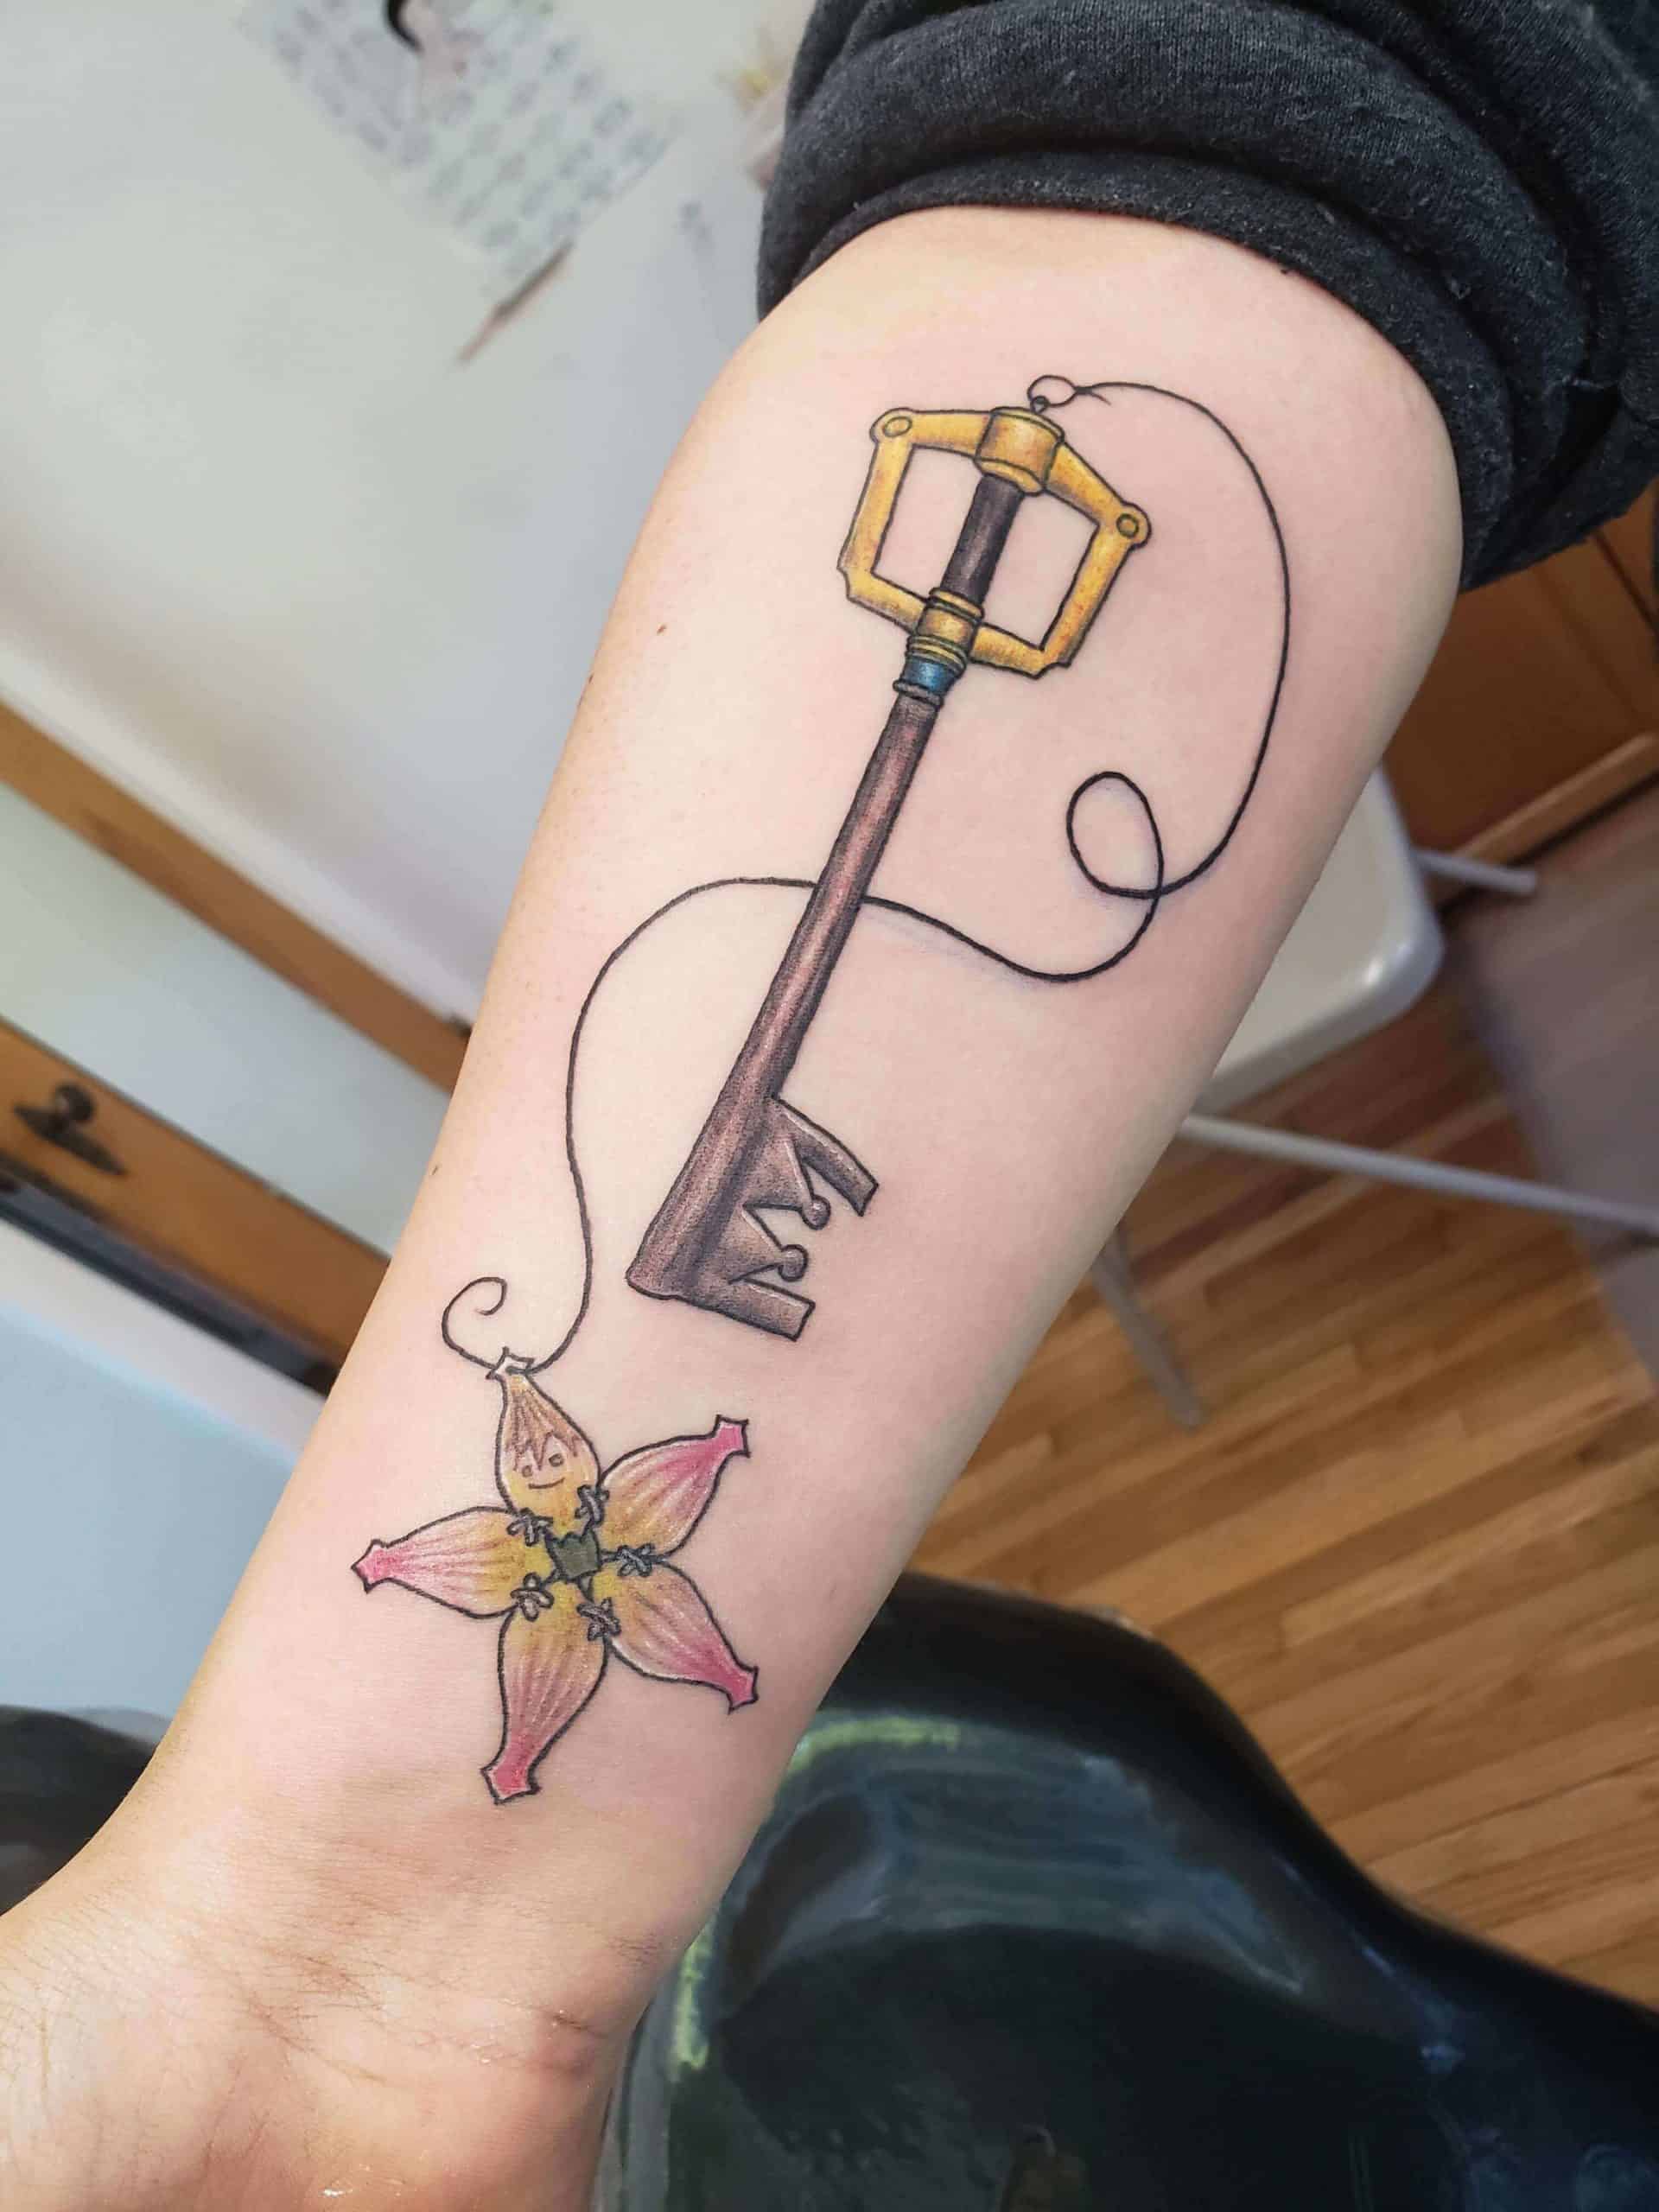 keyblade arm tattoo